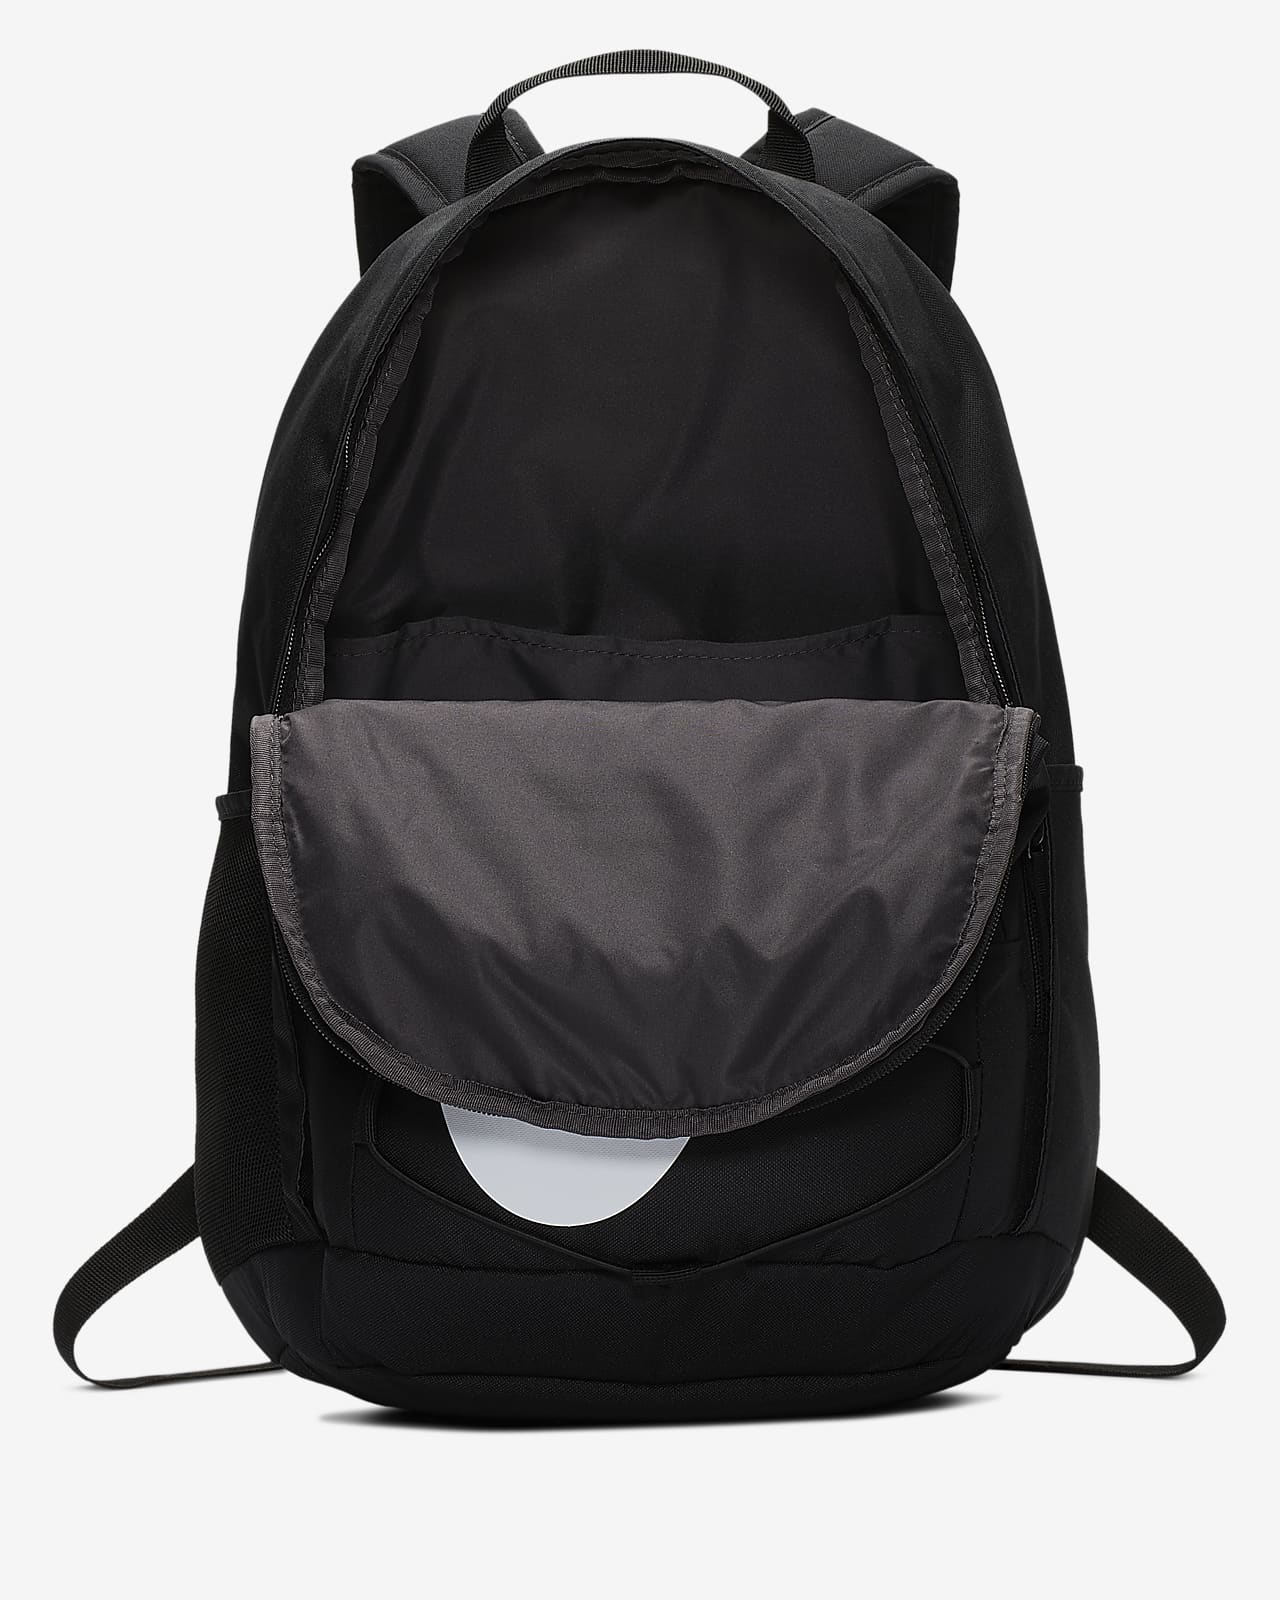 nike hayward 2.0 backpack dimensions